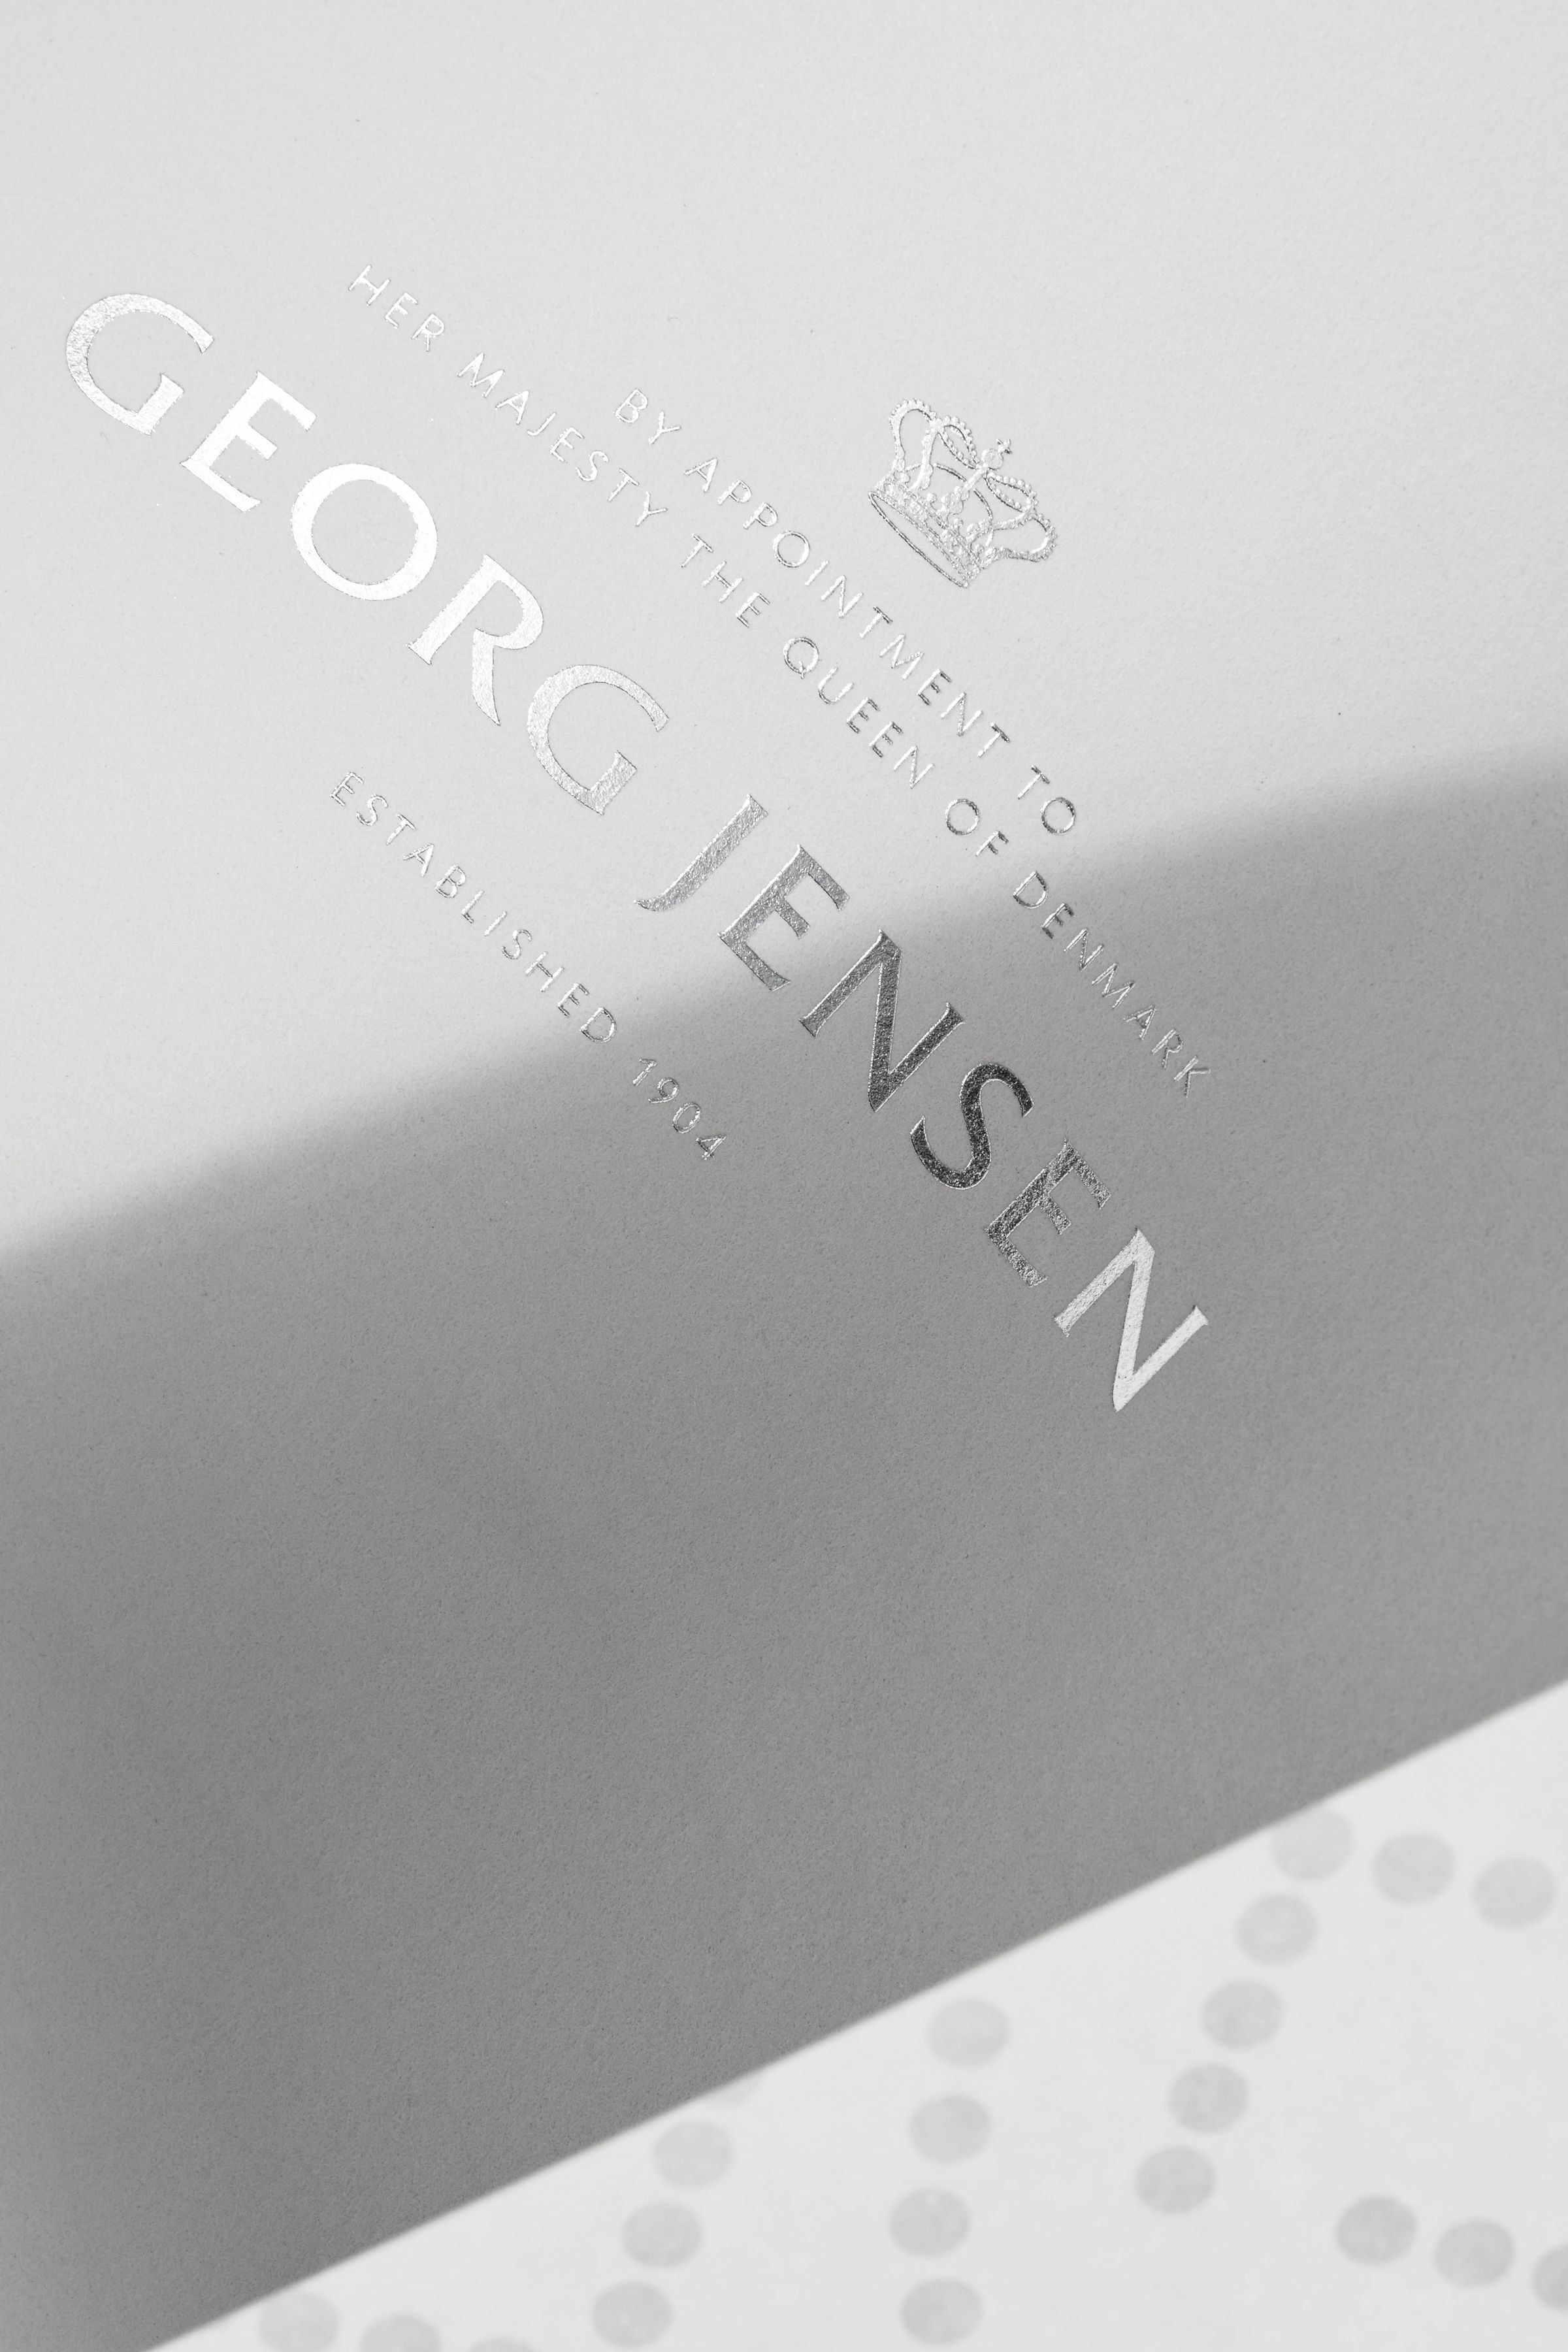 Georg Jensen logo in silver foil detail